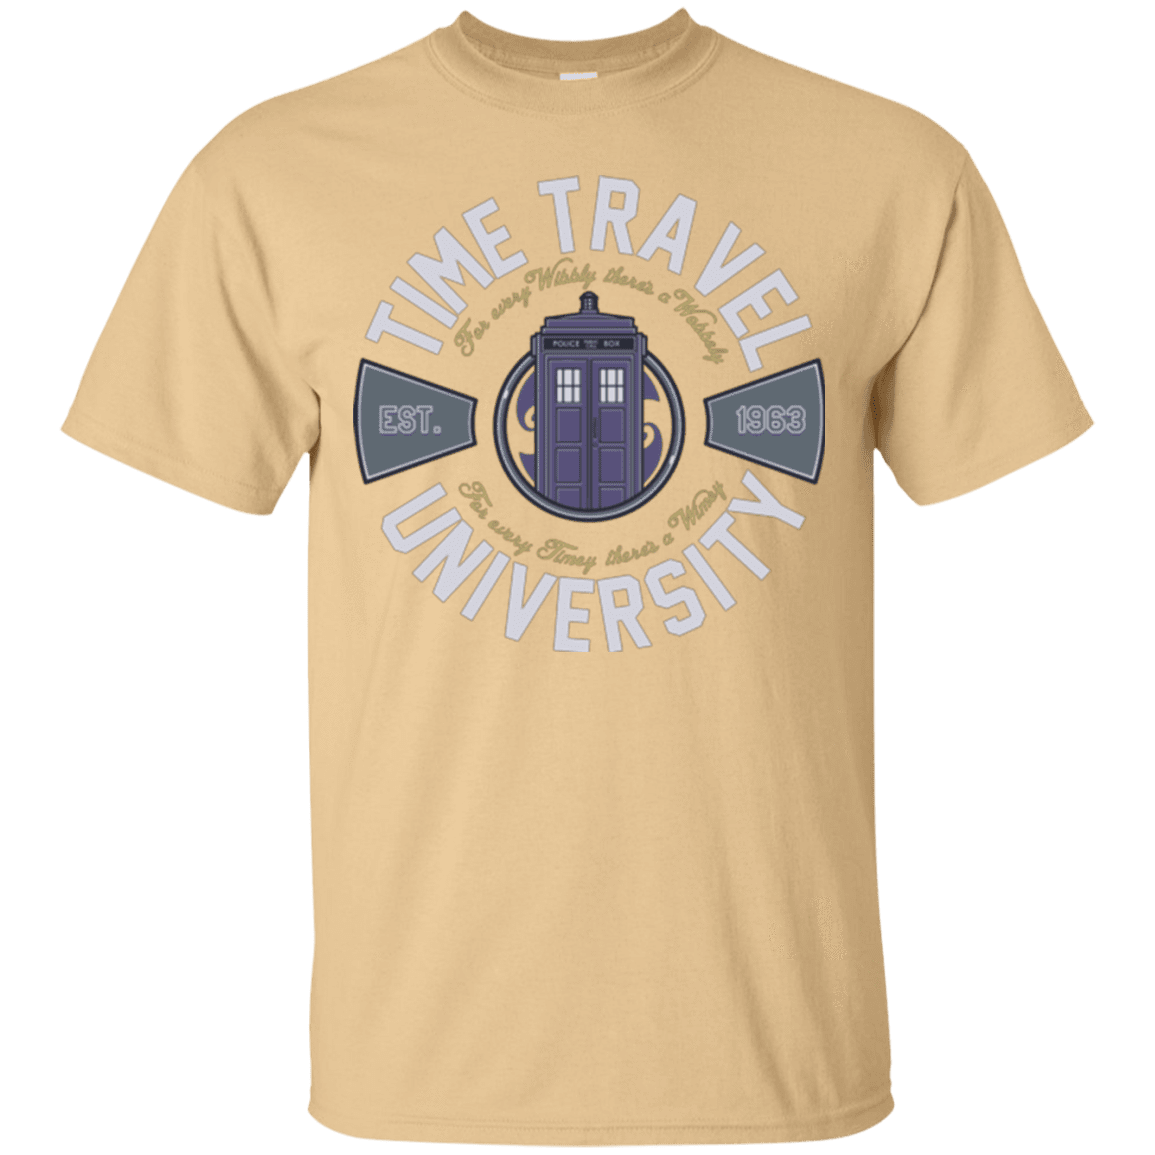 T-Shirts Vegas Gold / Small Time Travel University T-Shirt